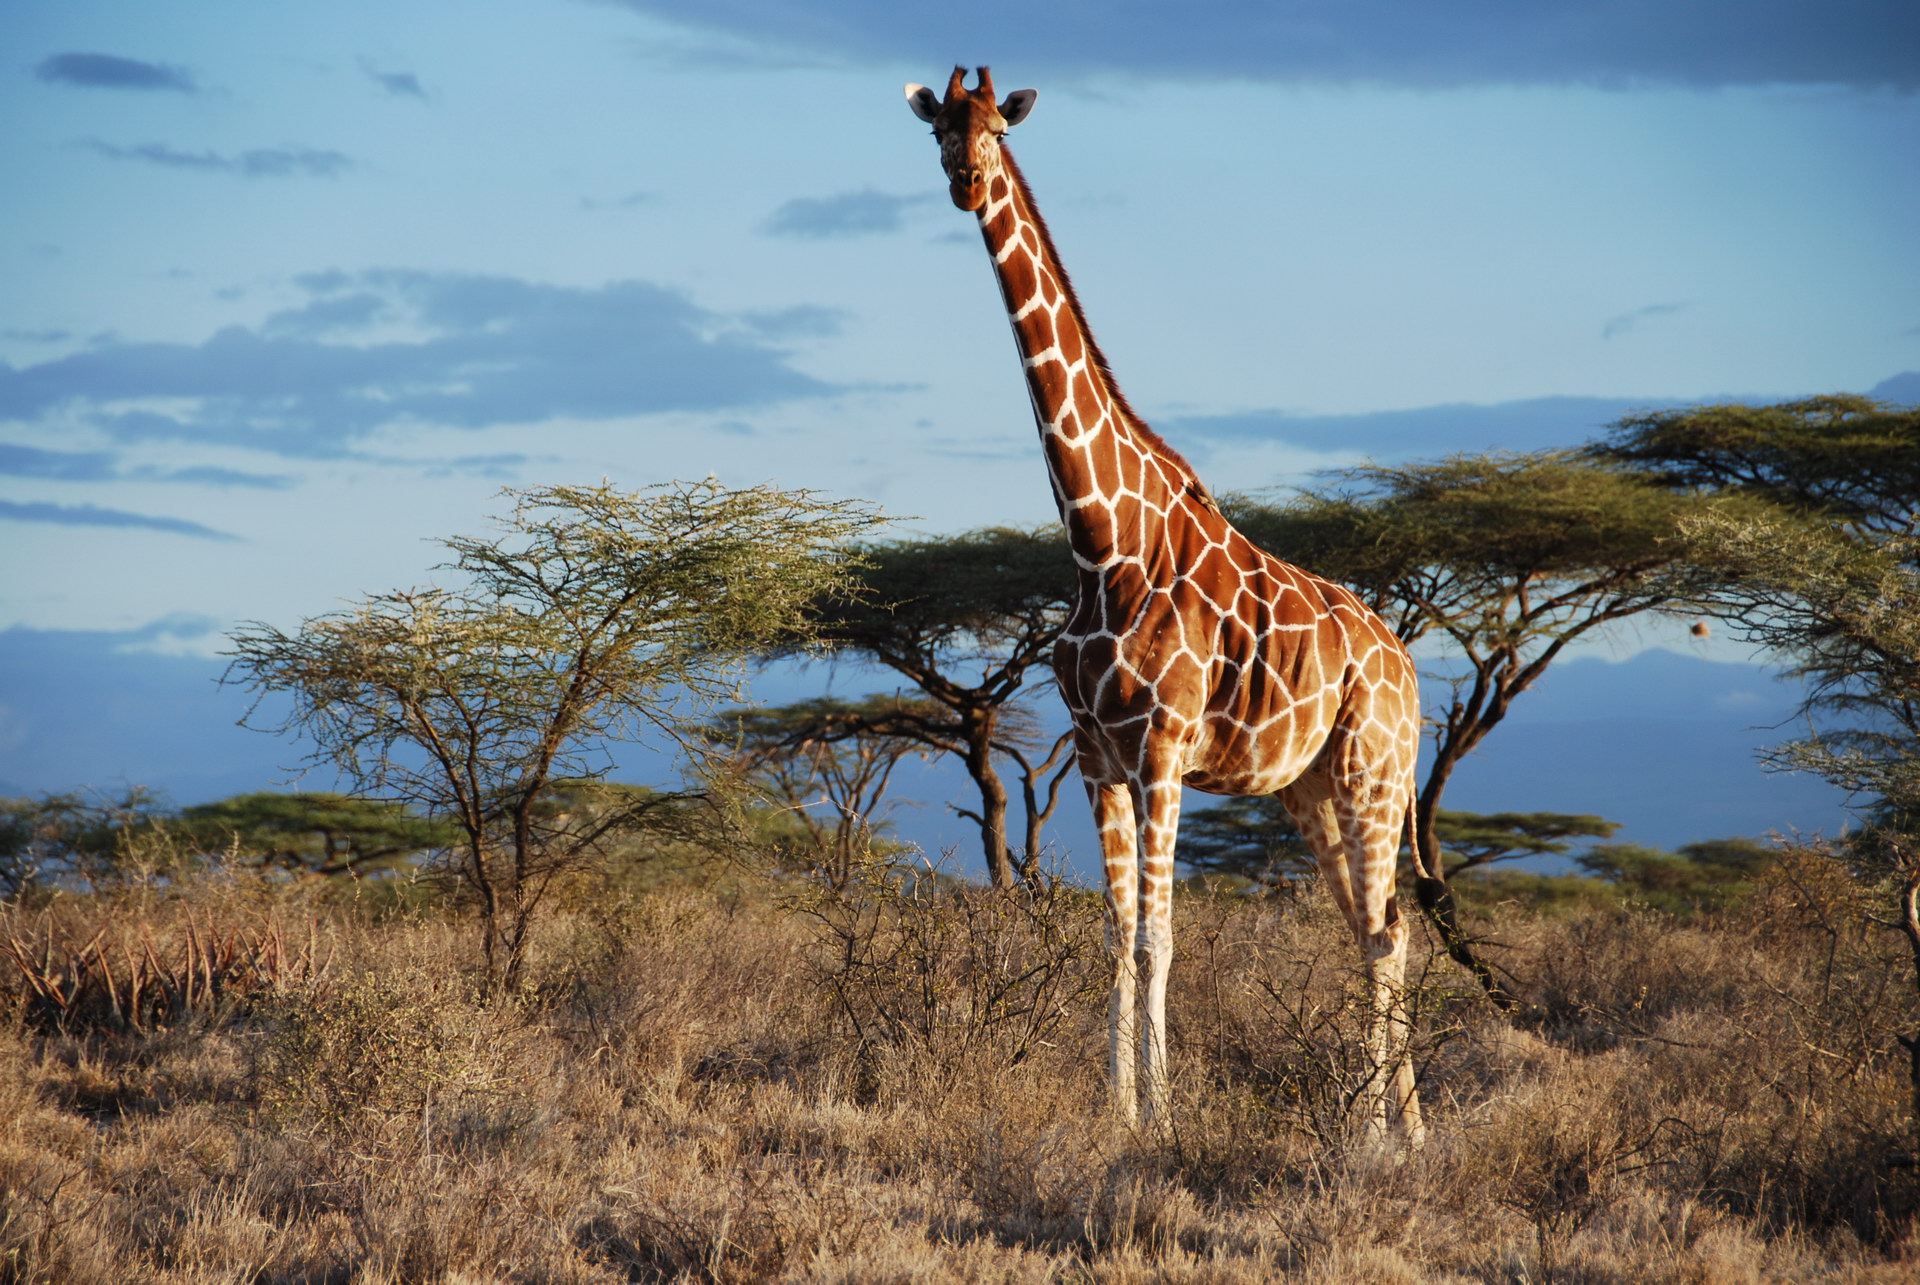 Giraffe mu savanna